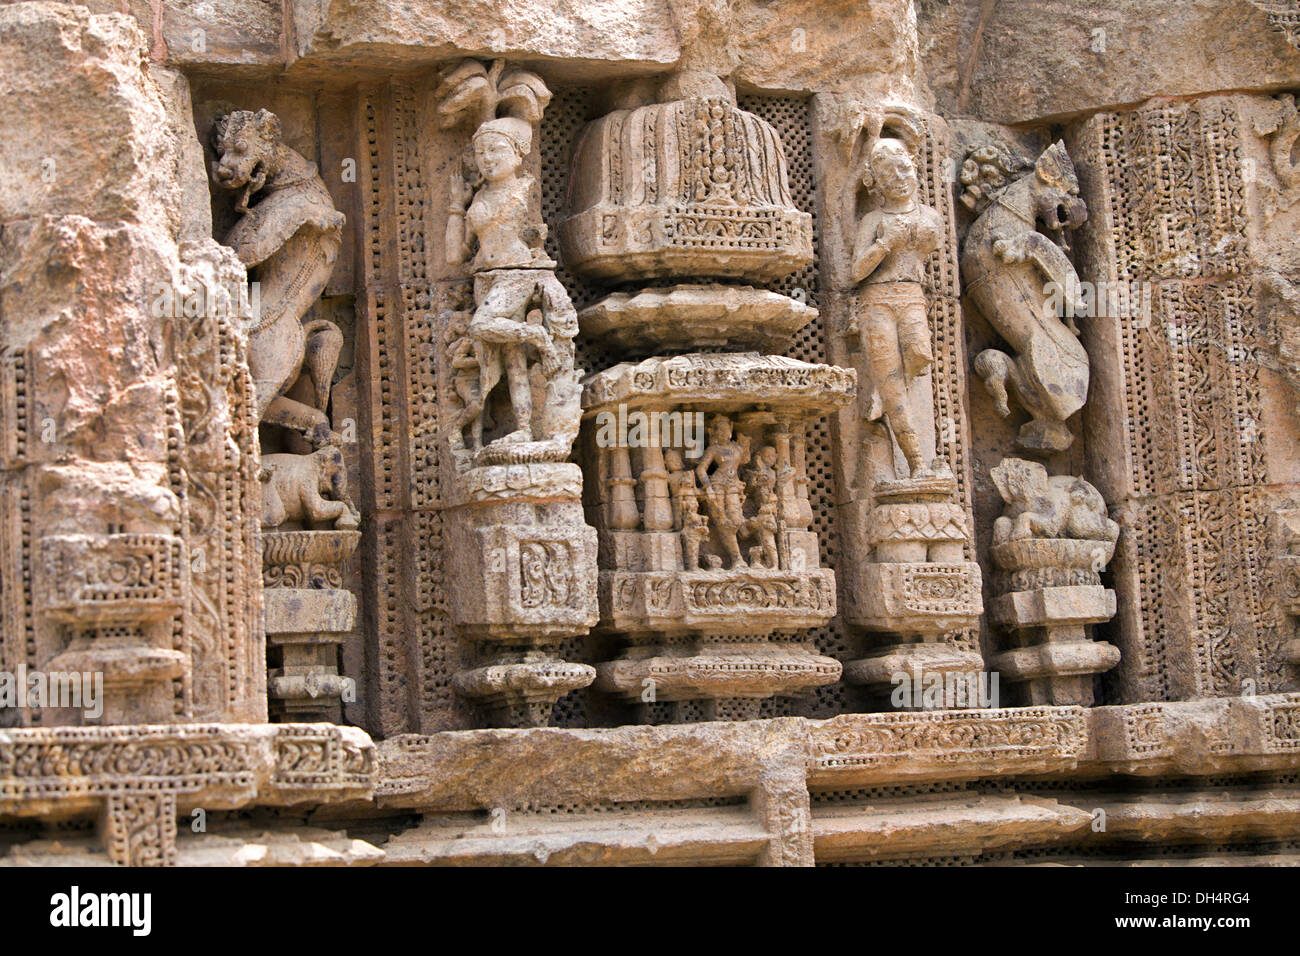 Carved Sculptures on wall, Konark Sun Temple, Orissa India. UNESCO world heritage site Stock Photo